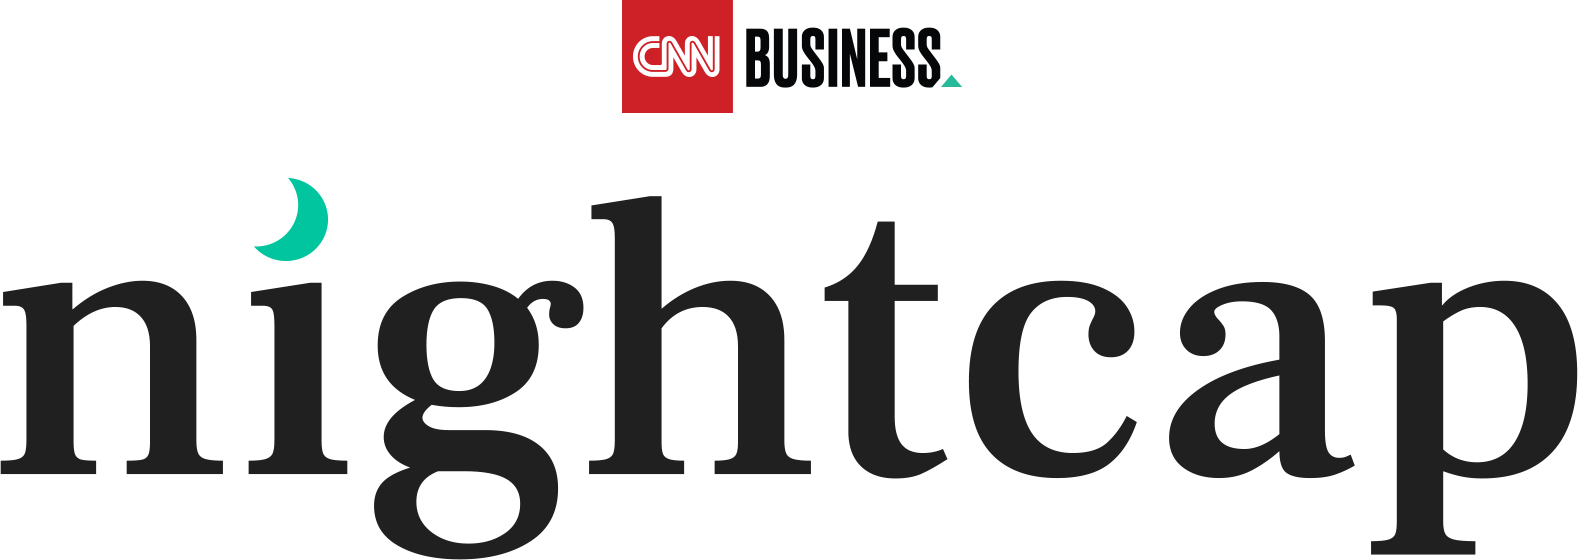 CNN Business Nightcap